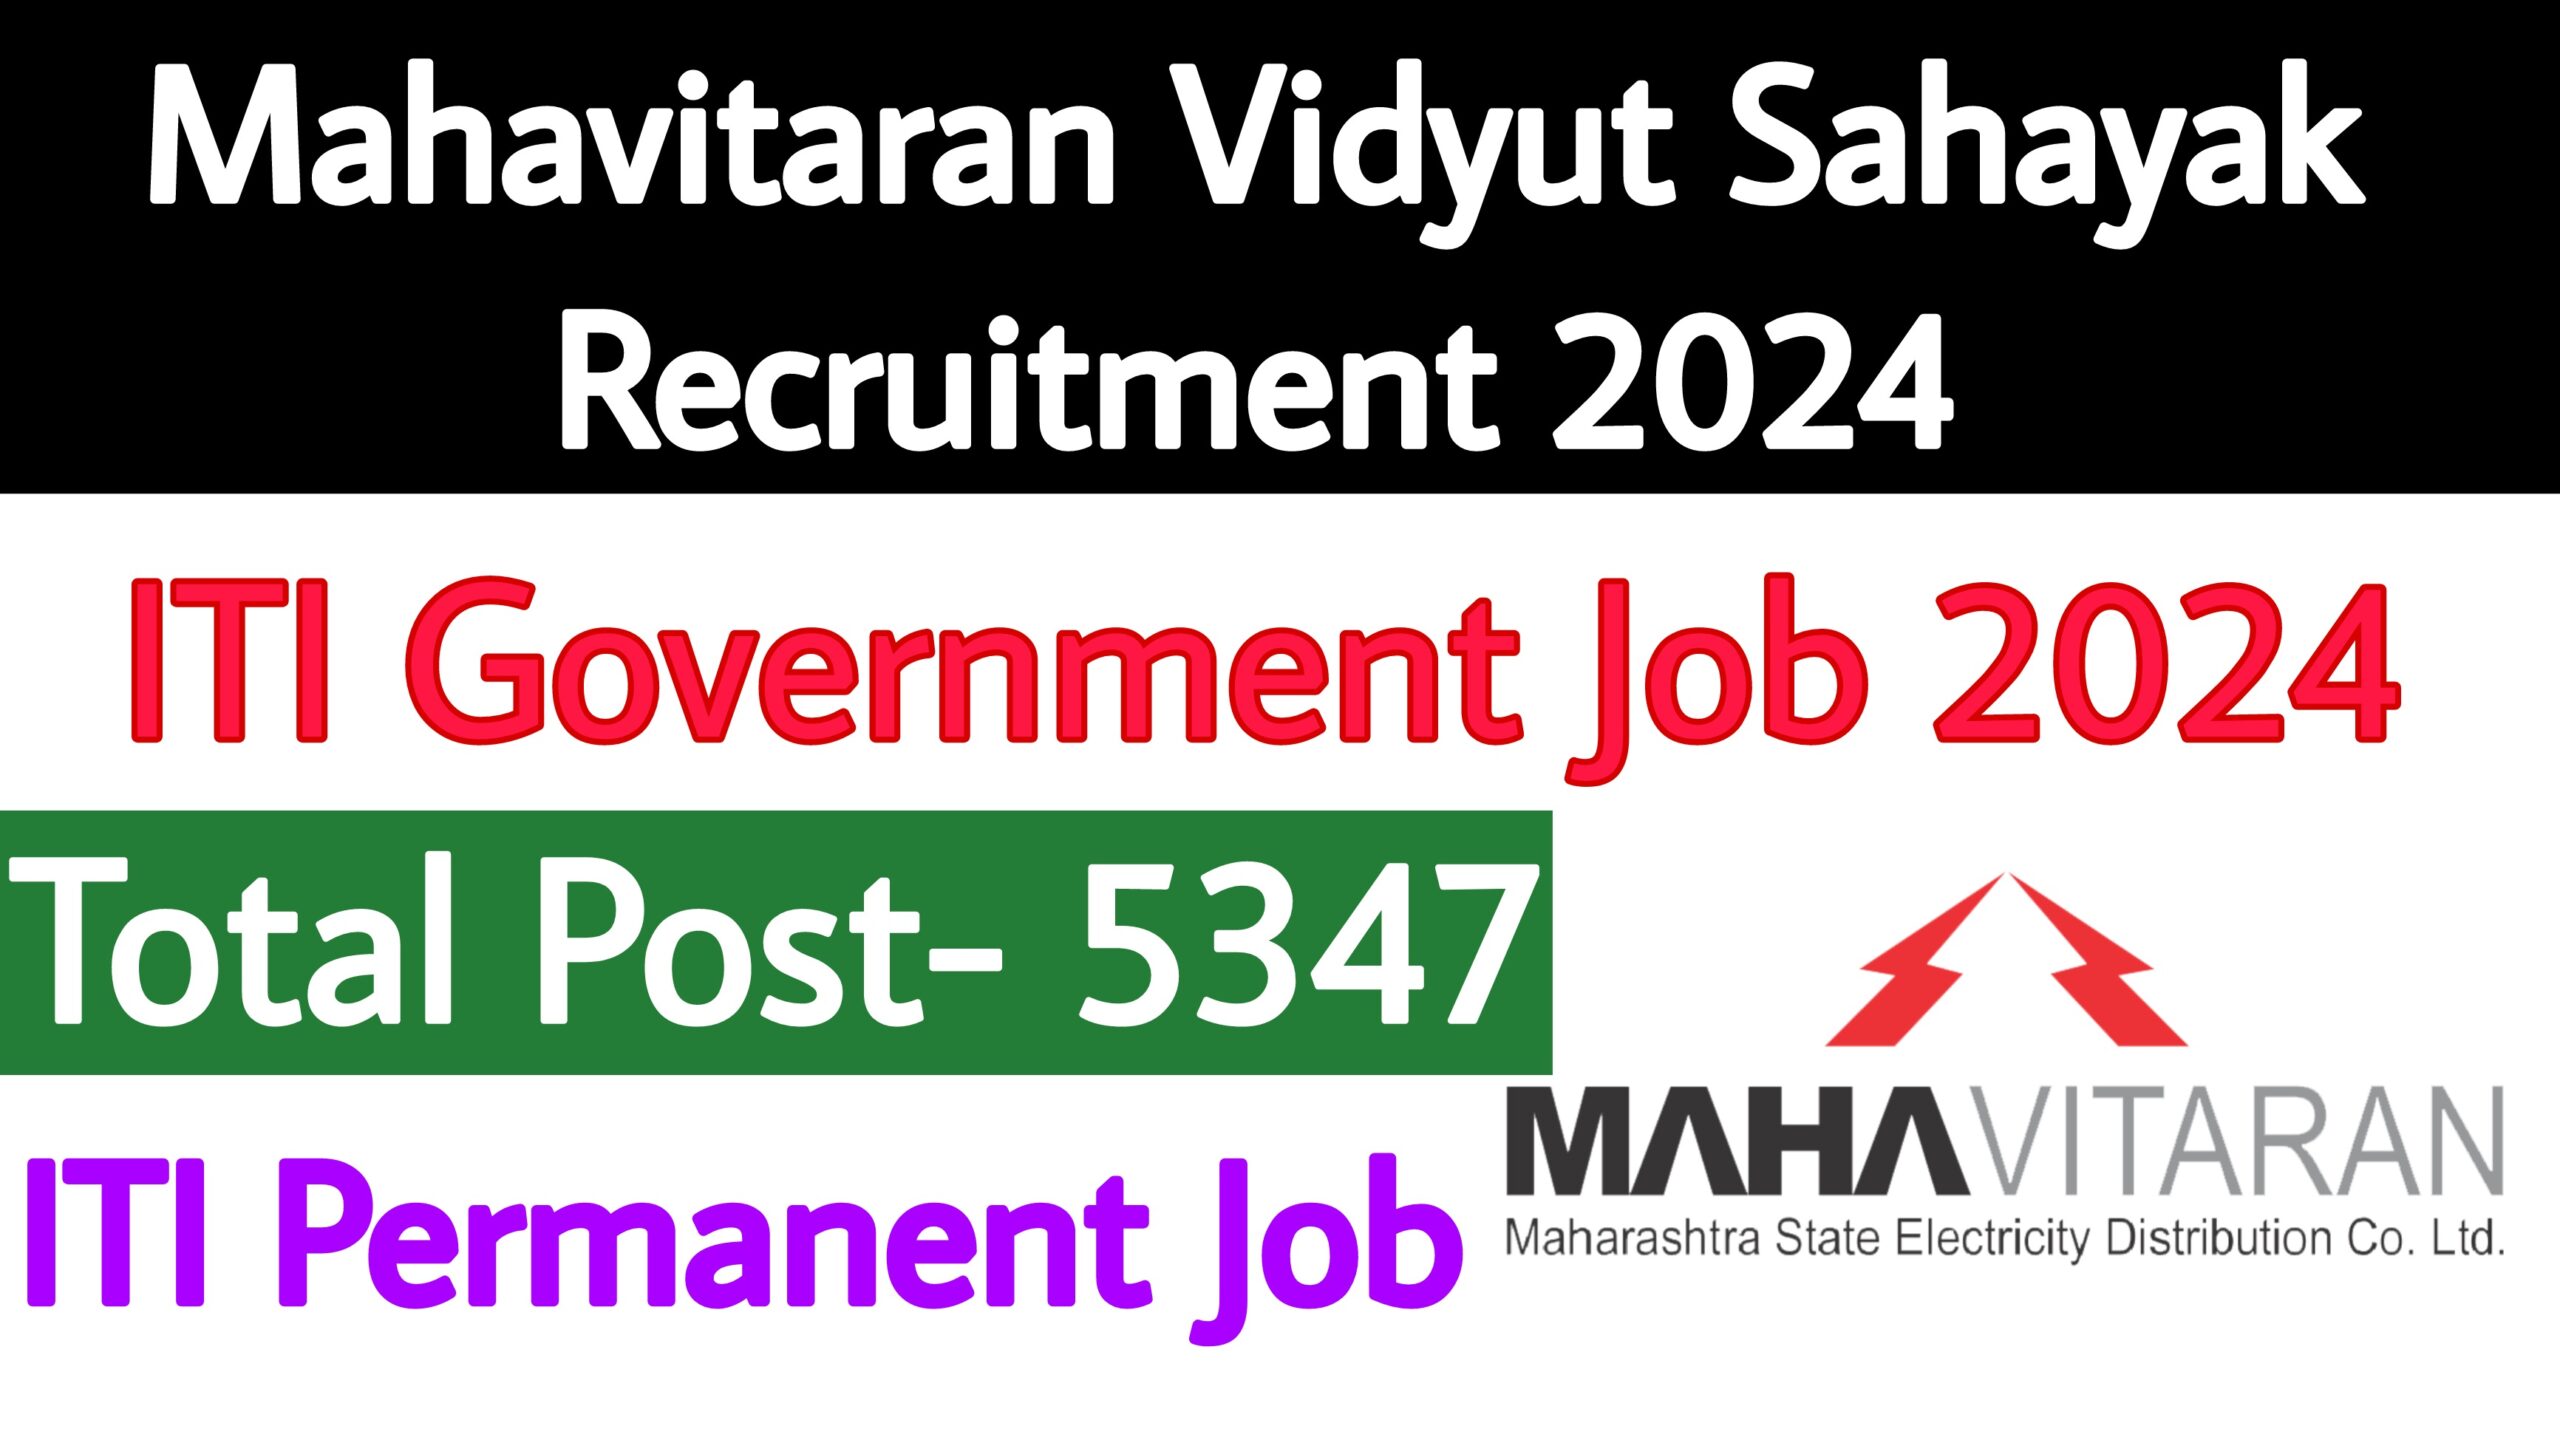 Mahadiscom Recruitment Vidyut Sahayak 2024